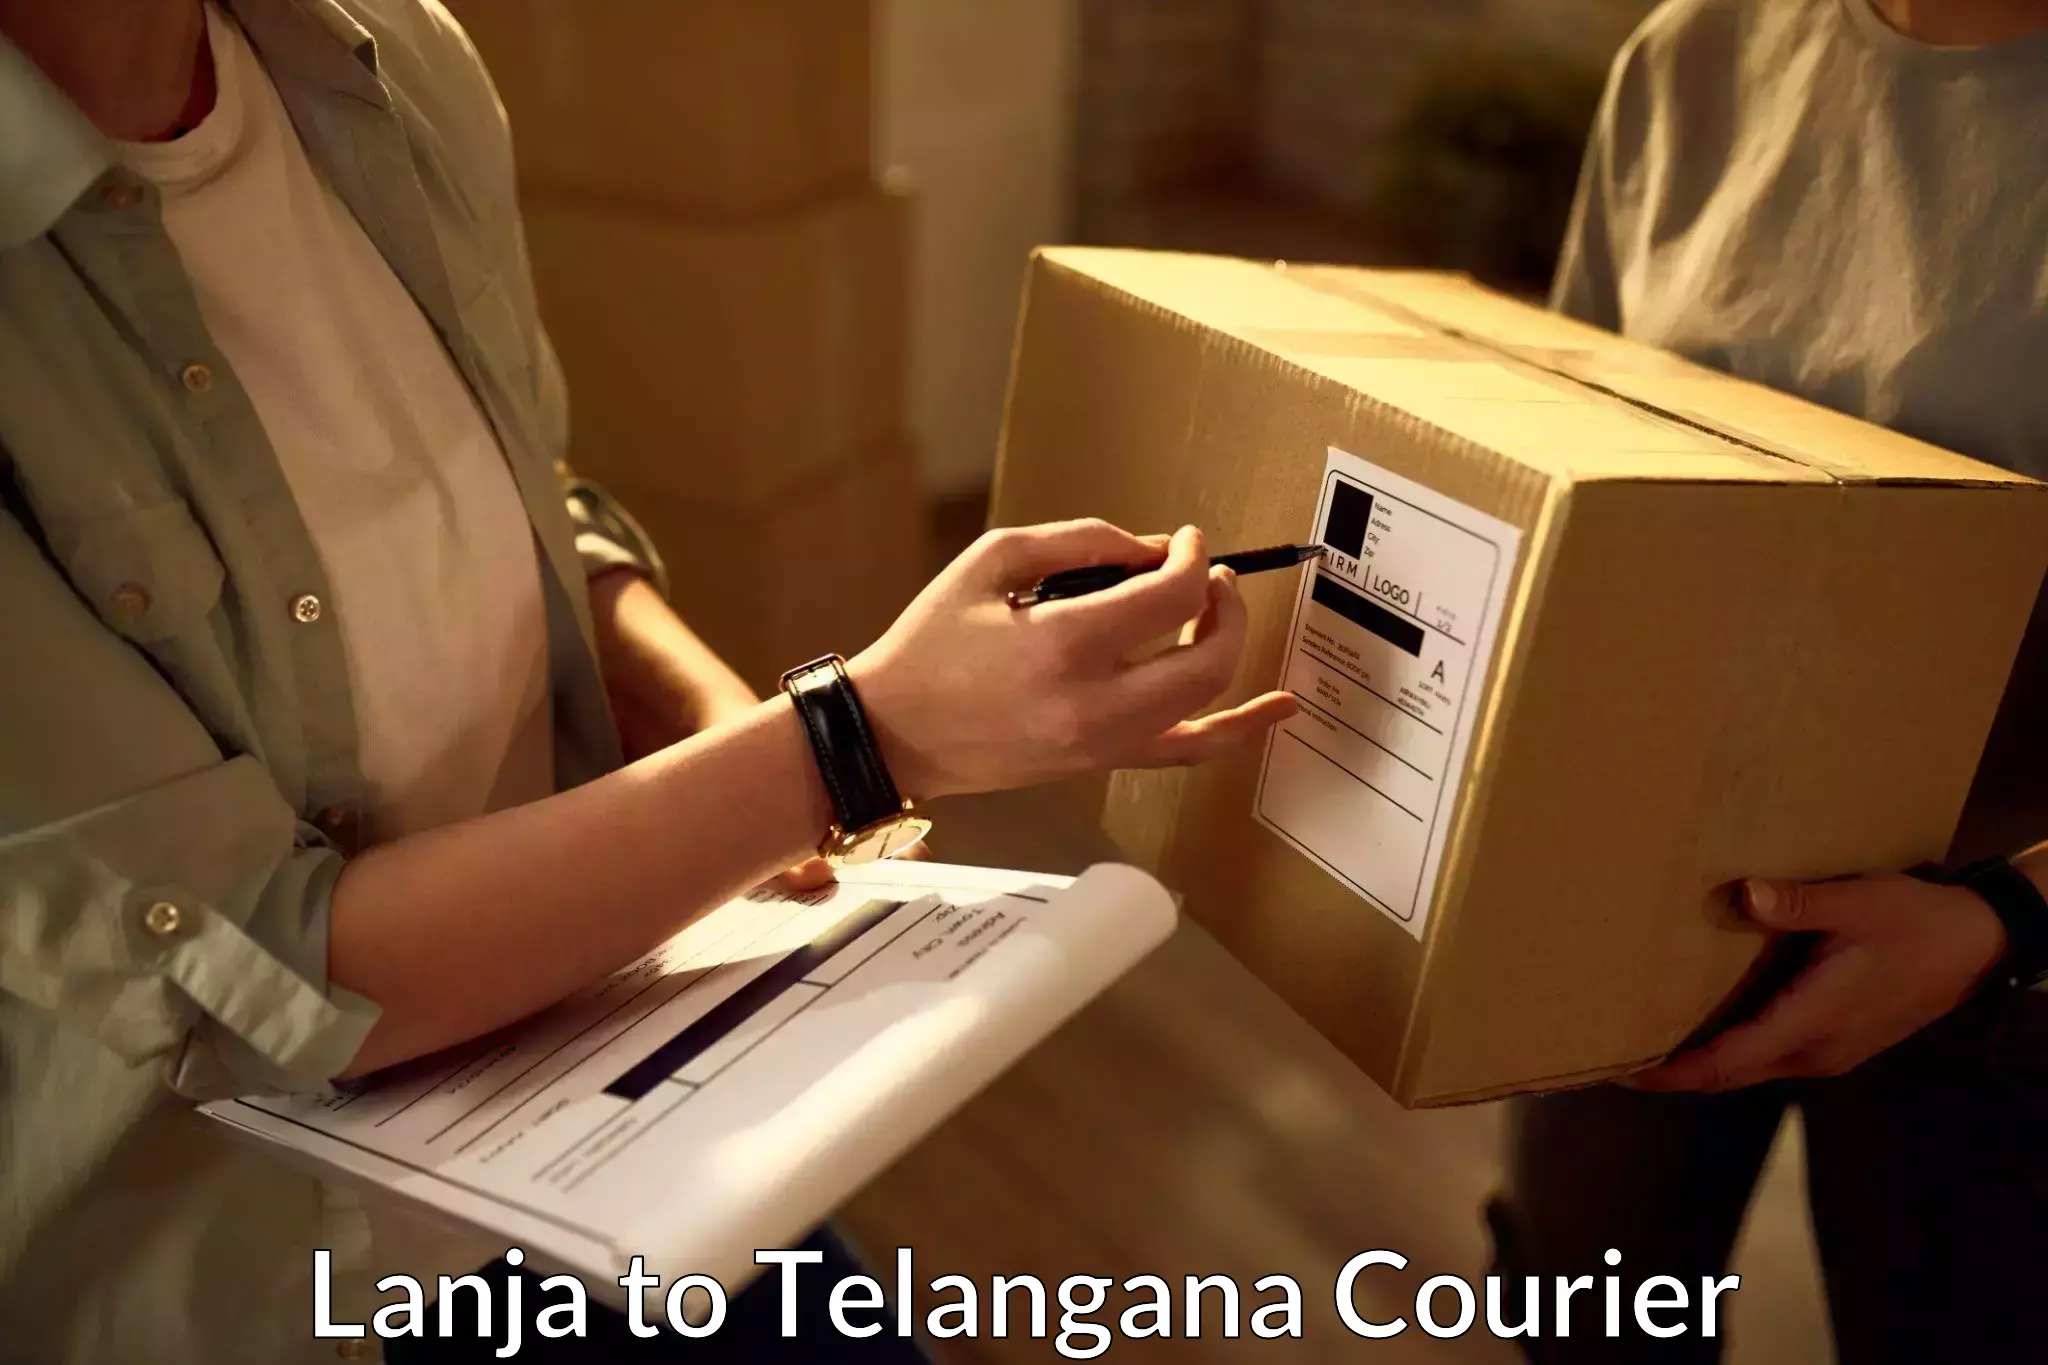 International courier rates Lanja to Telangana